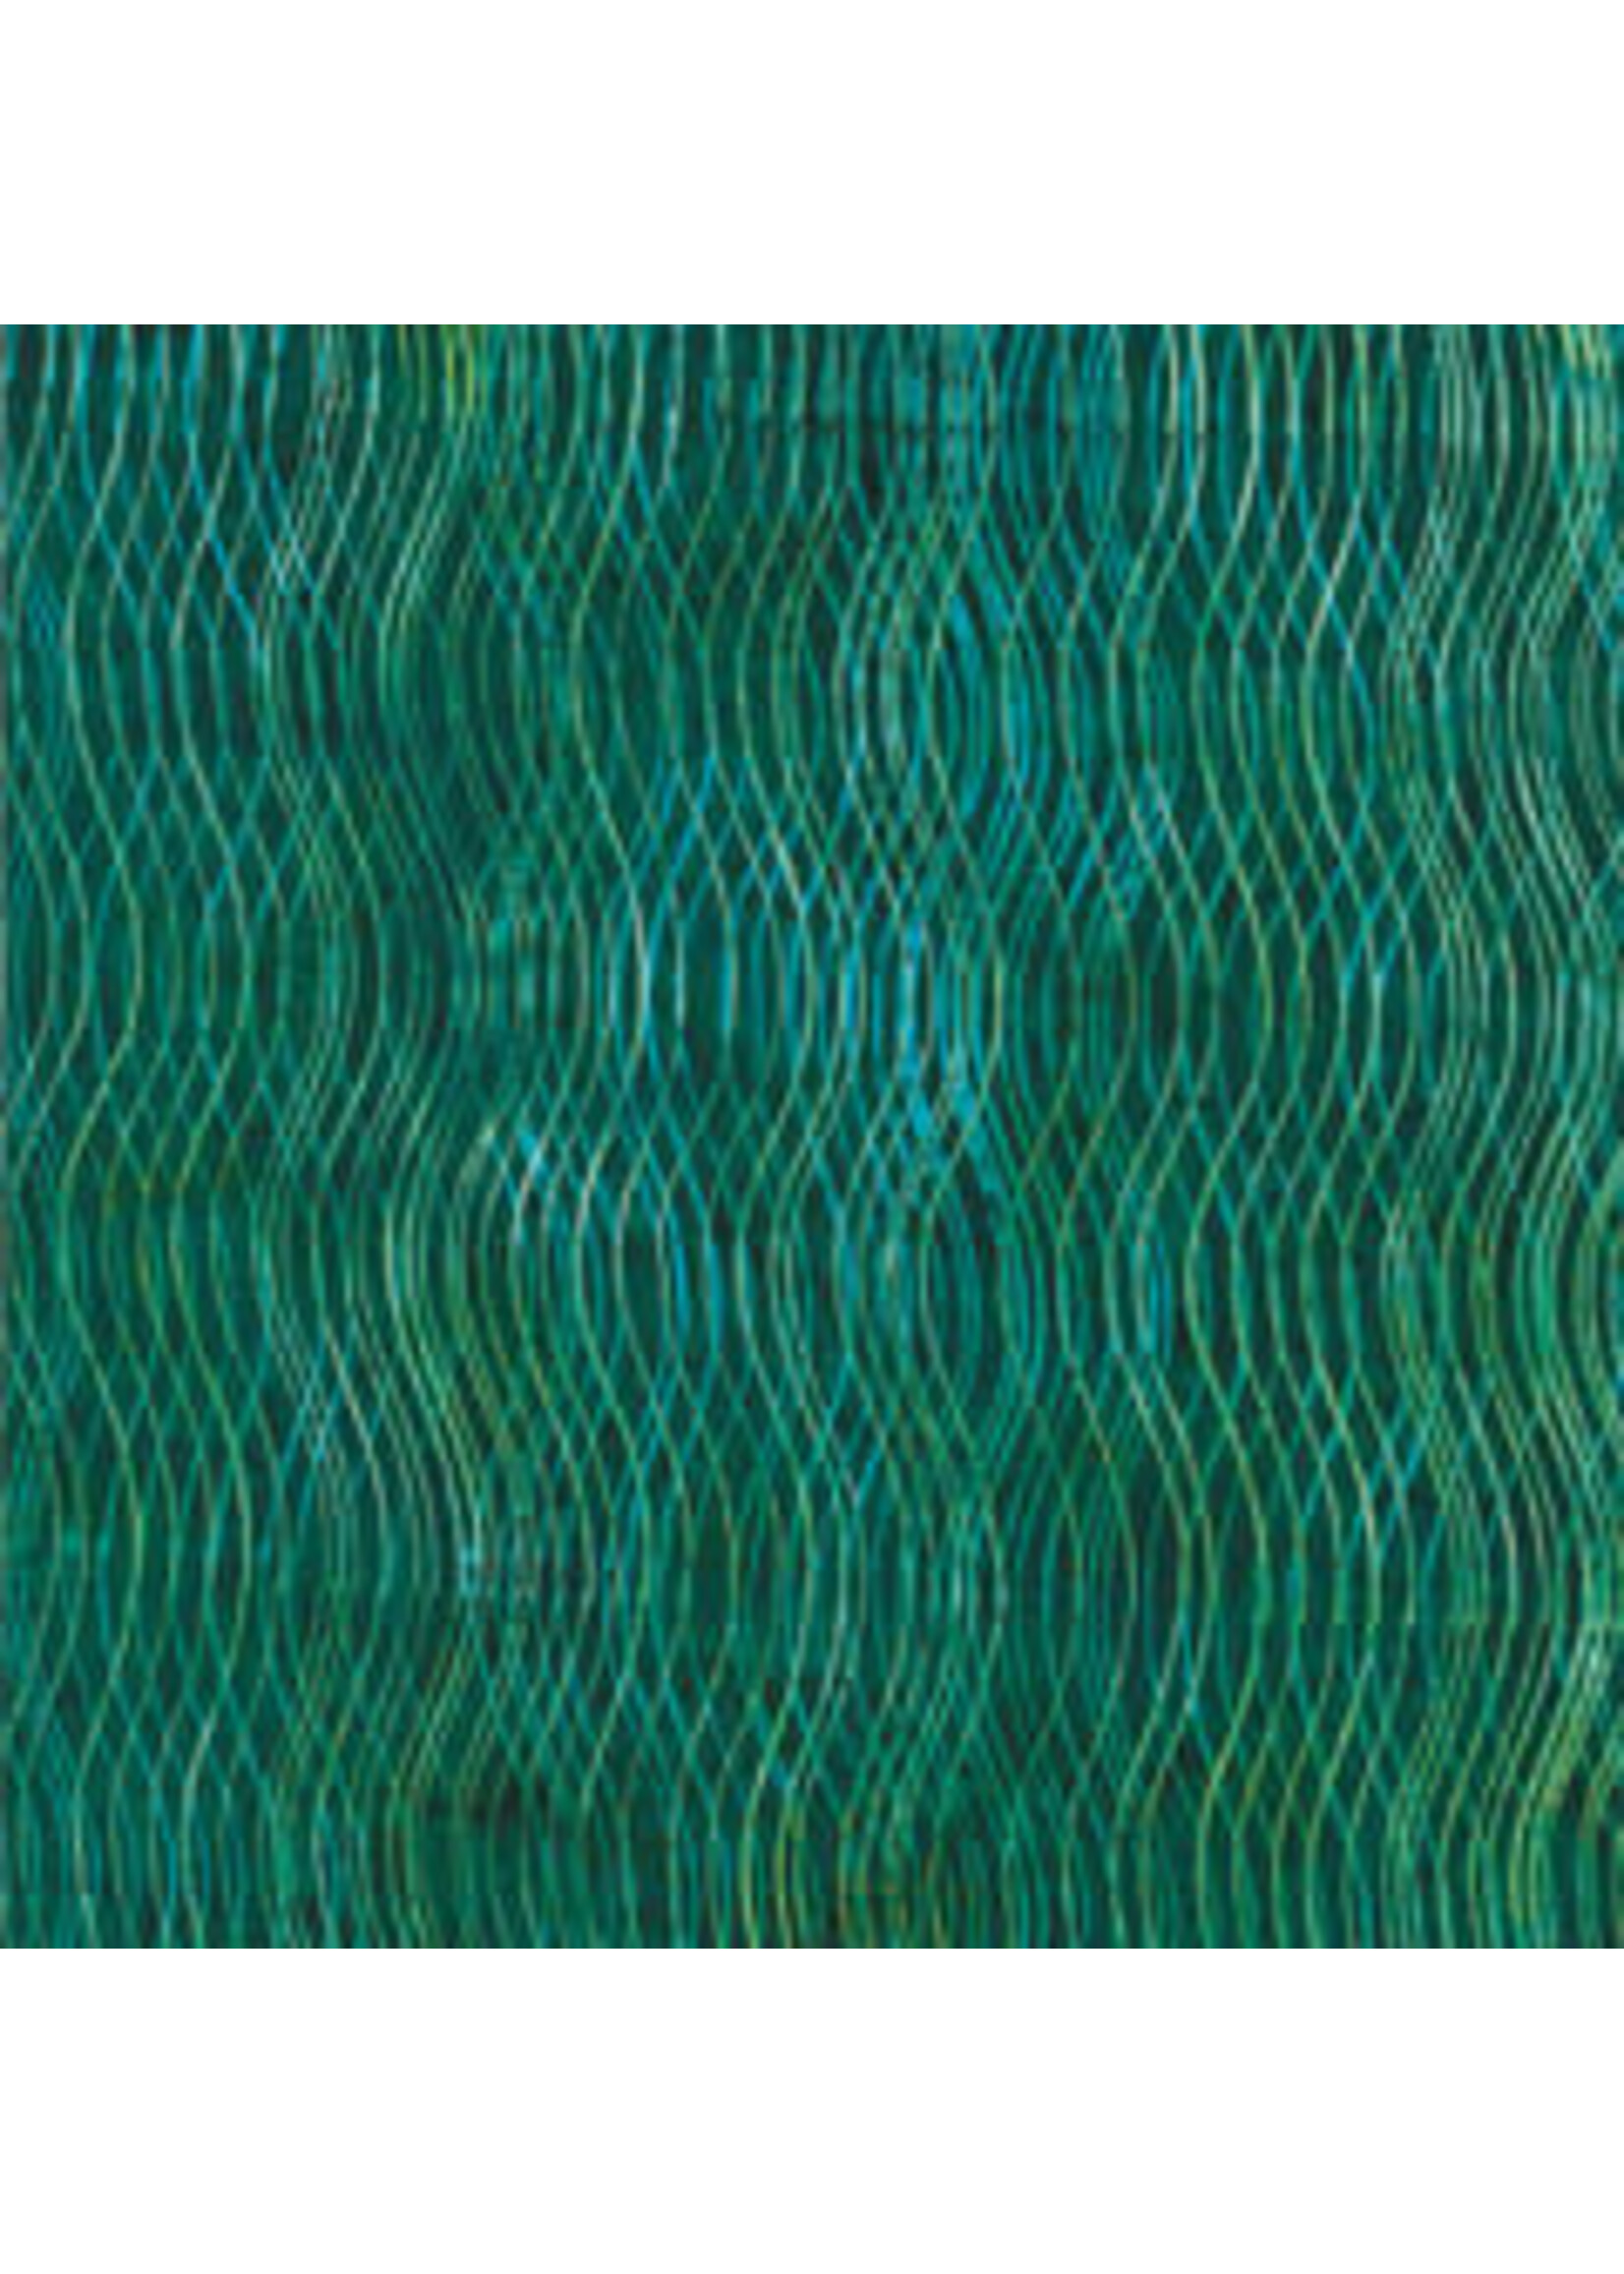 Hoffman Fabrics Bali Batik Wave - Emerald - Coupon - 90 cm x 110 cm